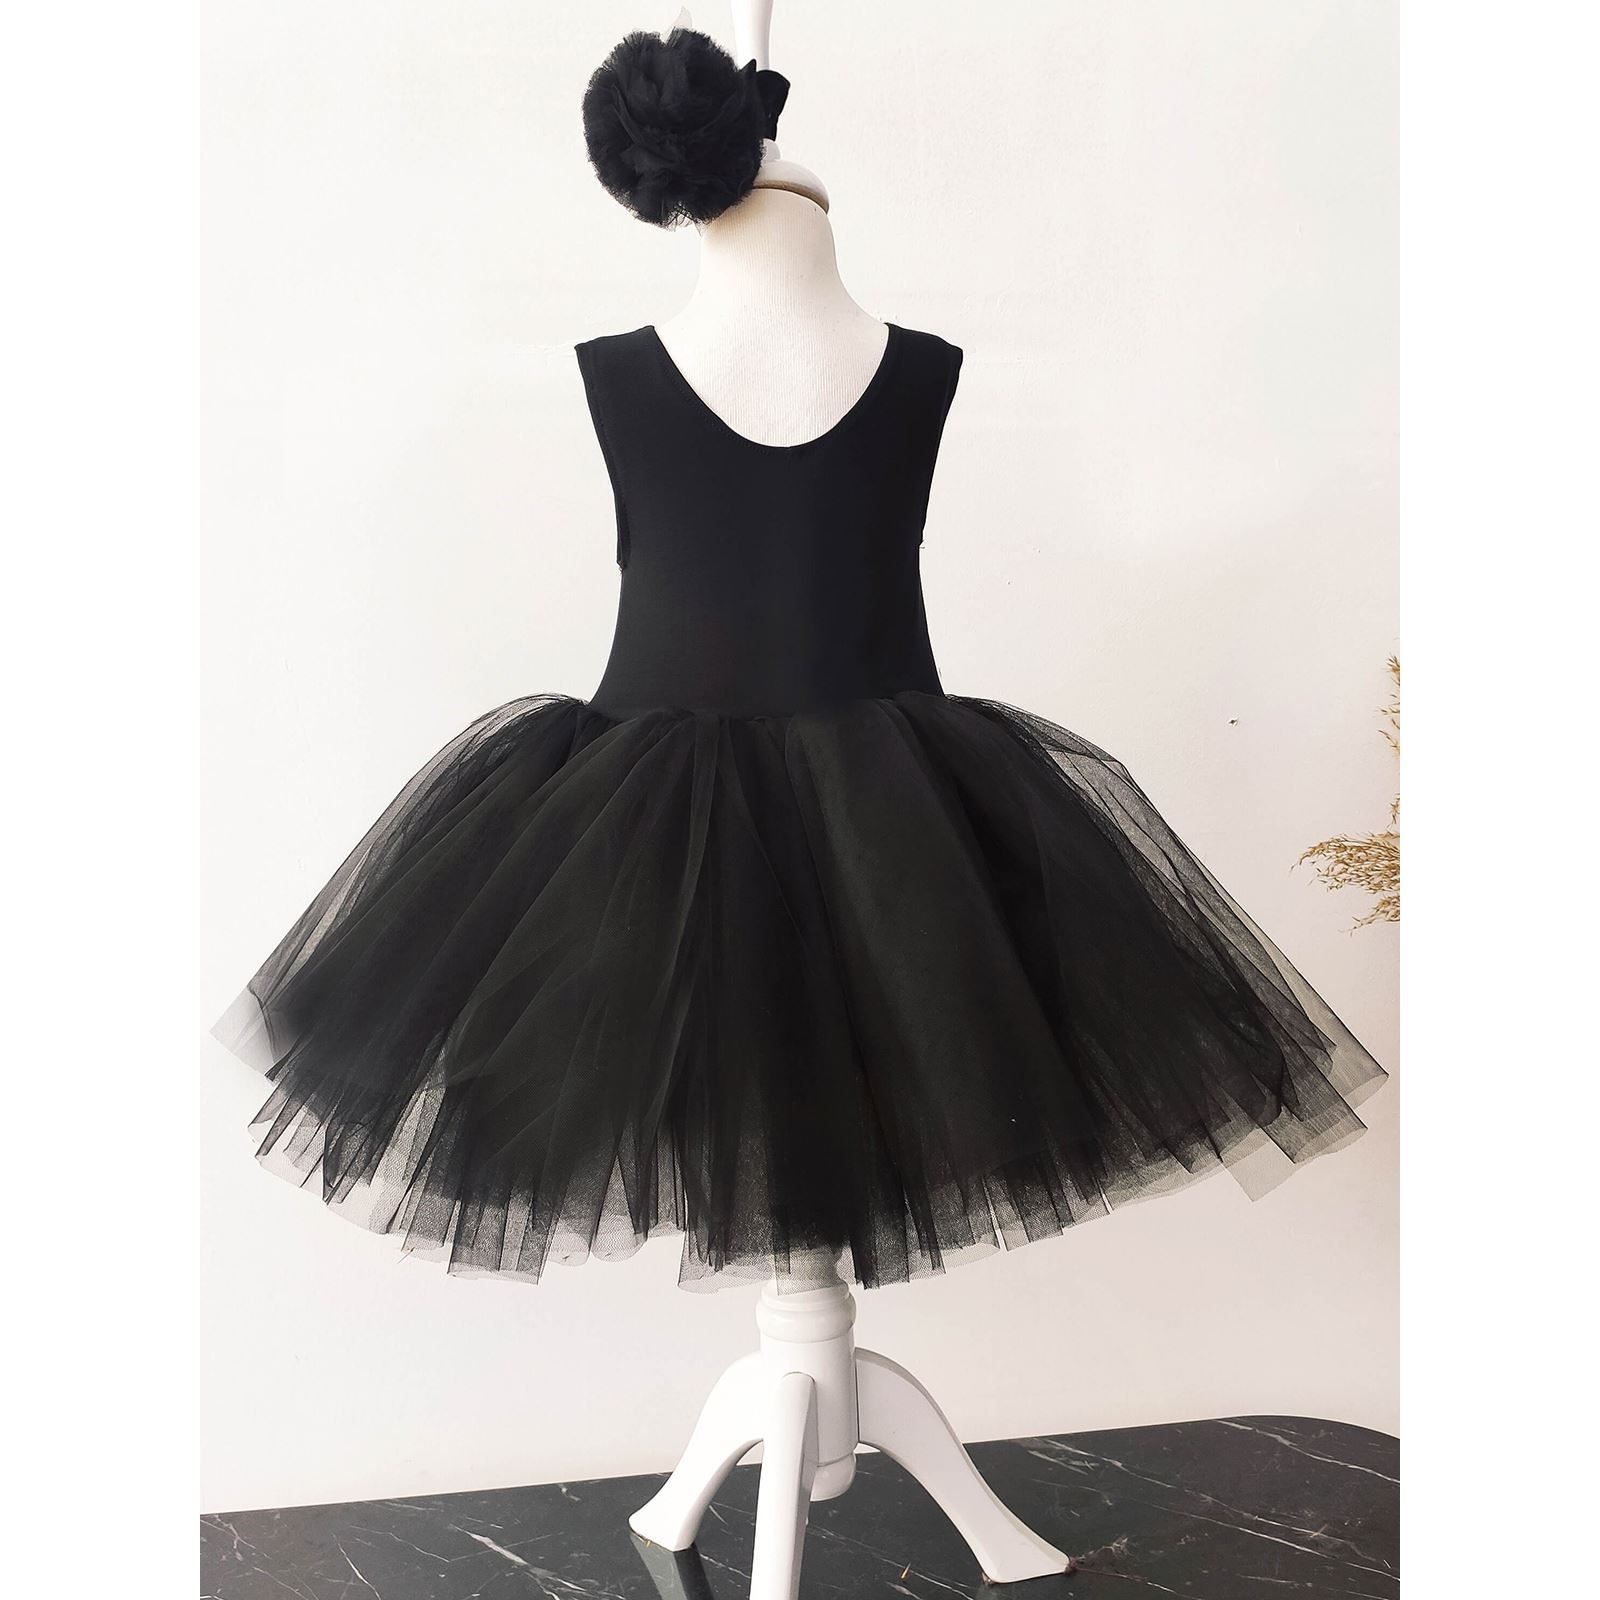 Shecco Babba Balerin Model Kız Çocuk Tütü Elbise, Kelebek Pelerin ve Bandana Takımı - Çocuk Abiye Elbise 6-10 Yaş Abiye Siyah